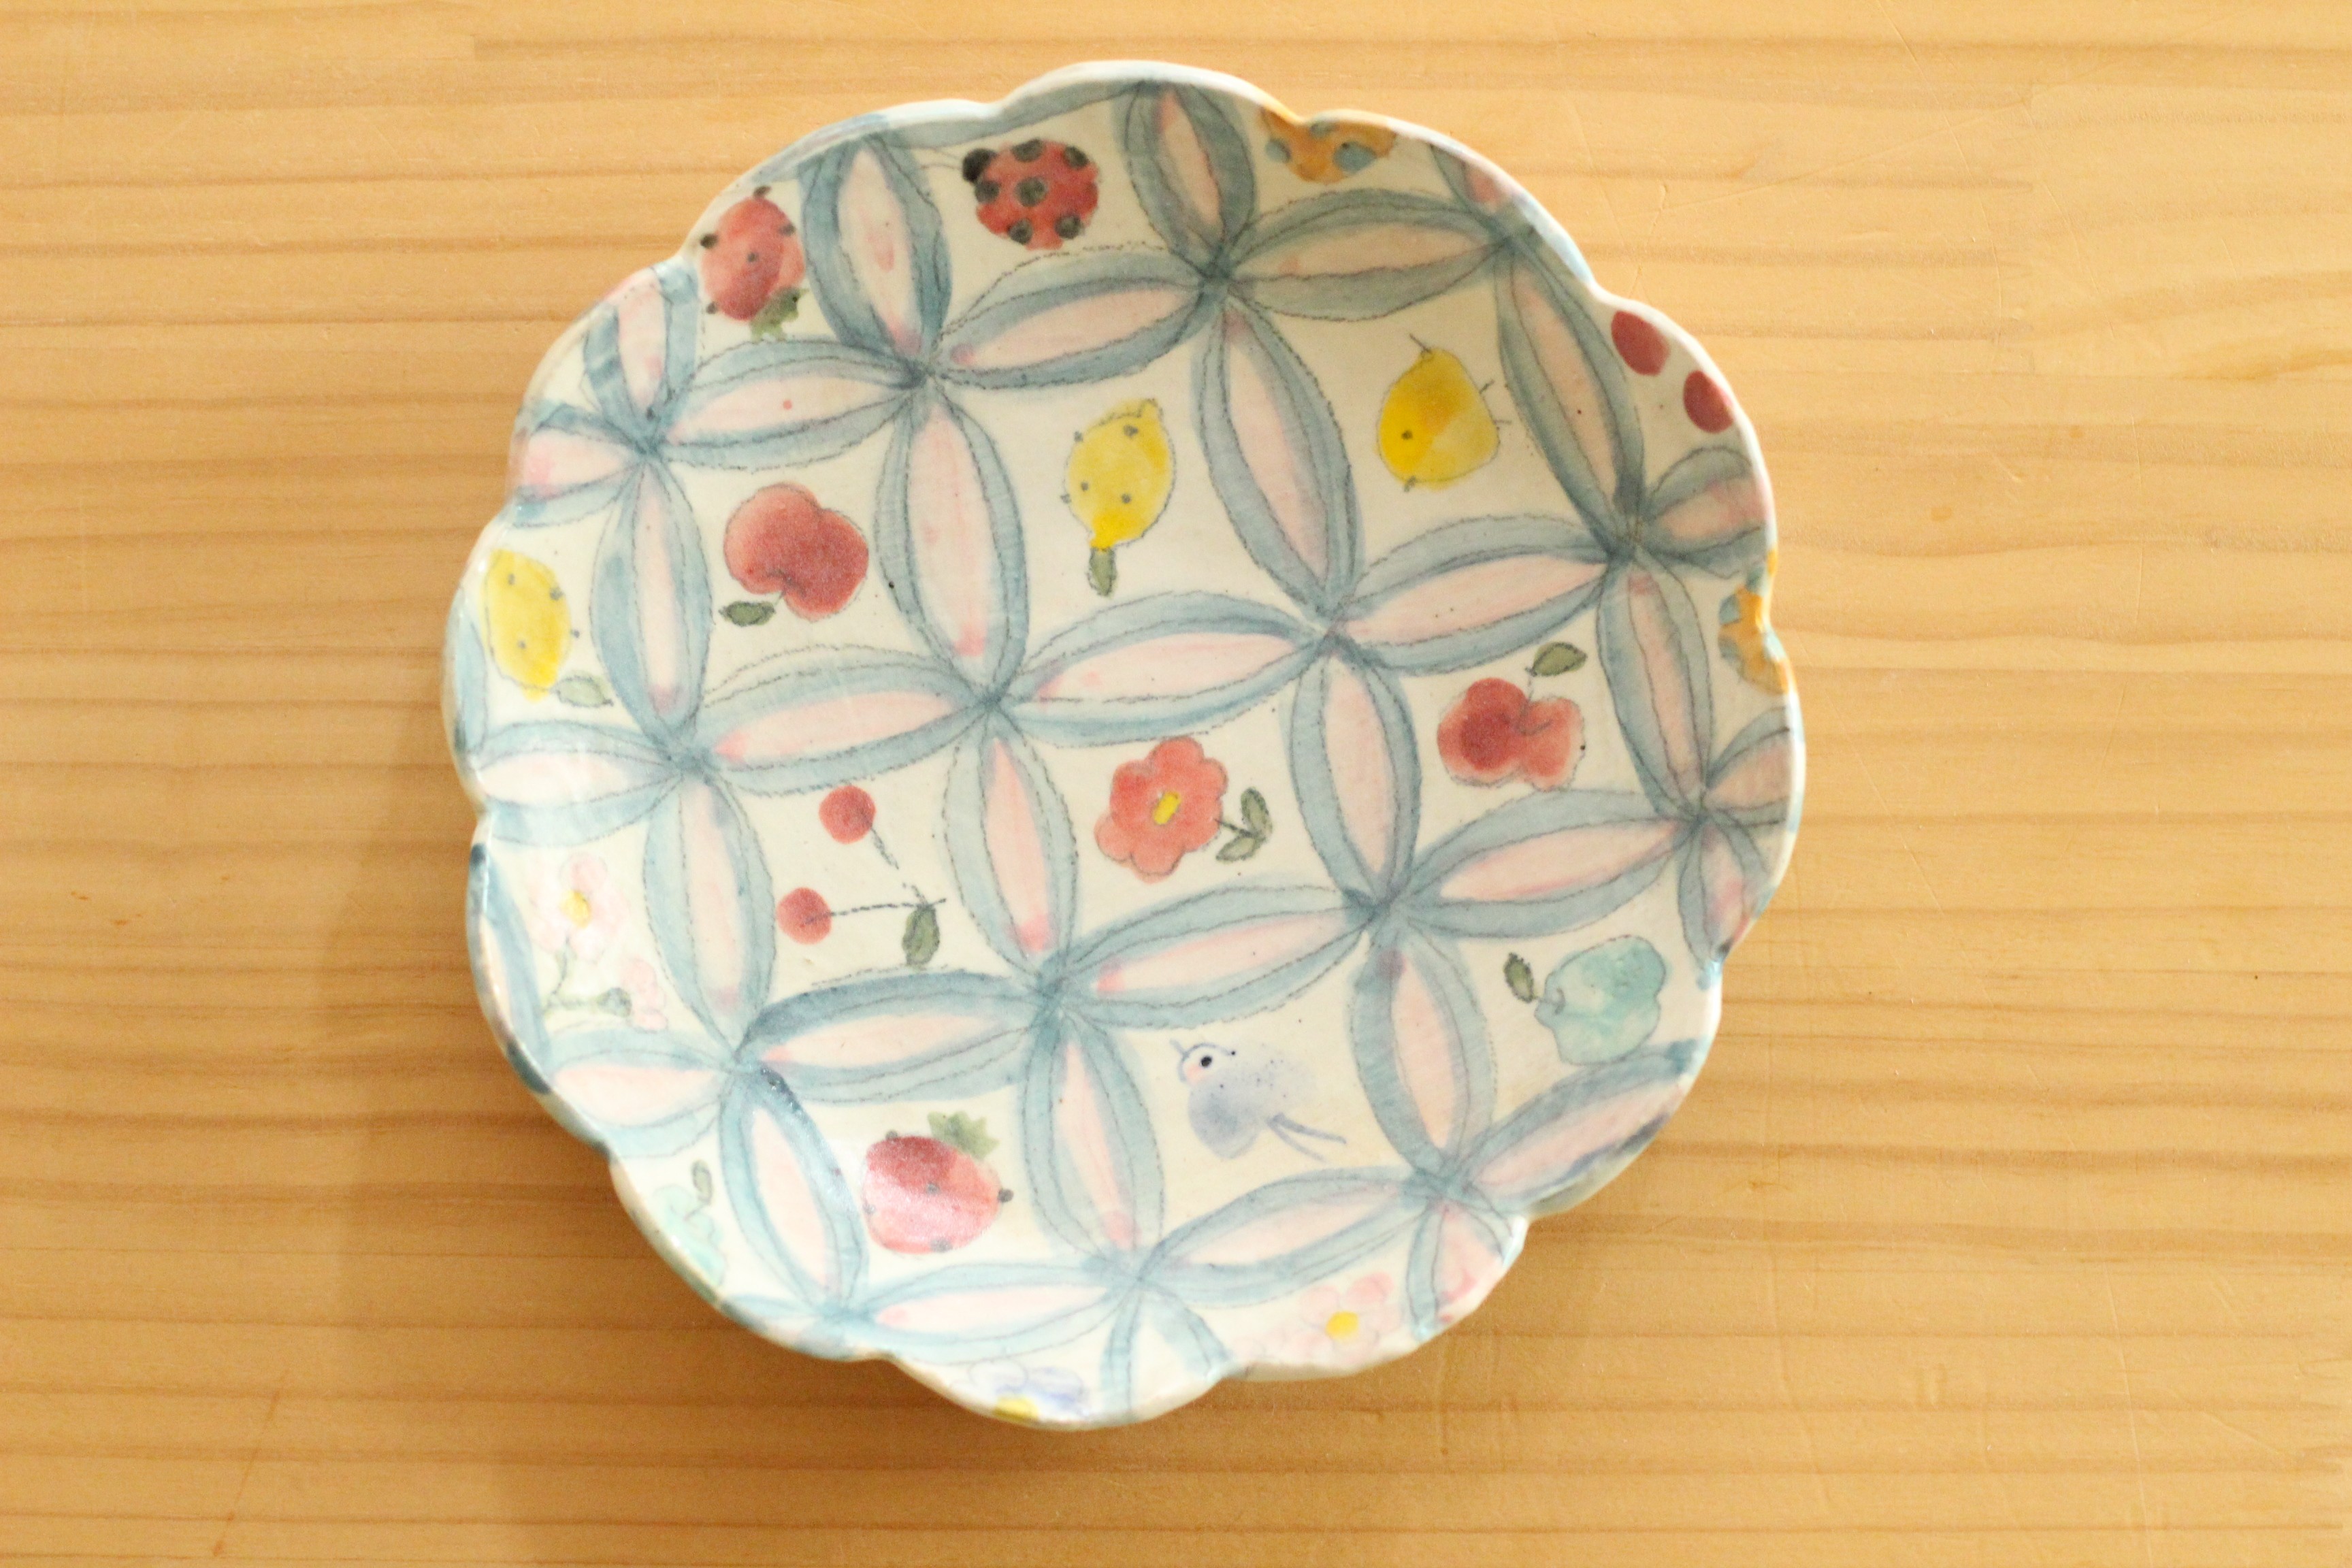 粉引七宝にかわいいものたくさんのお花形皿 Iichi ハンドメイド クラフト作品 手仕事品の通販